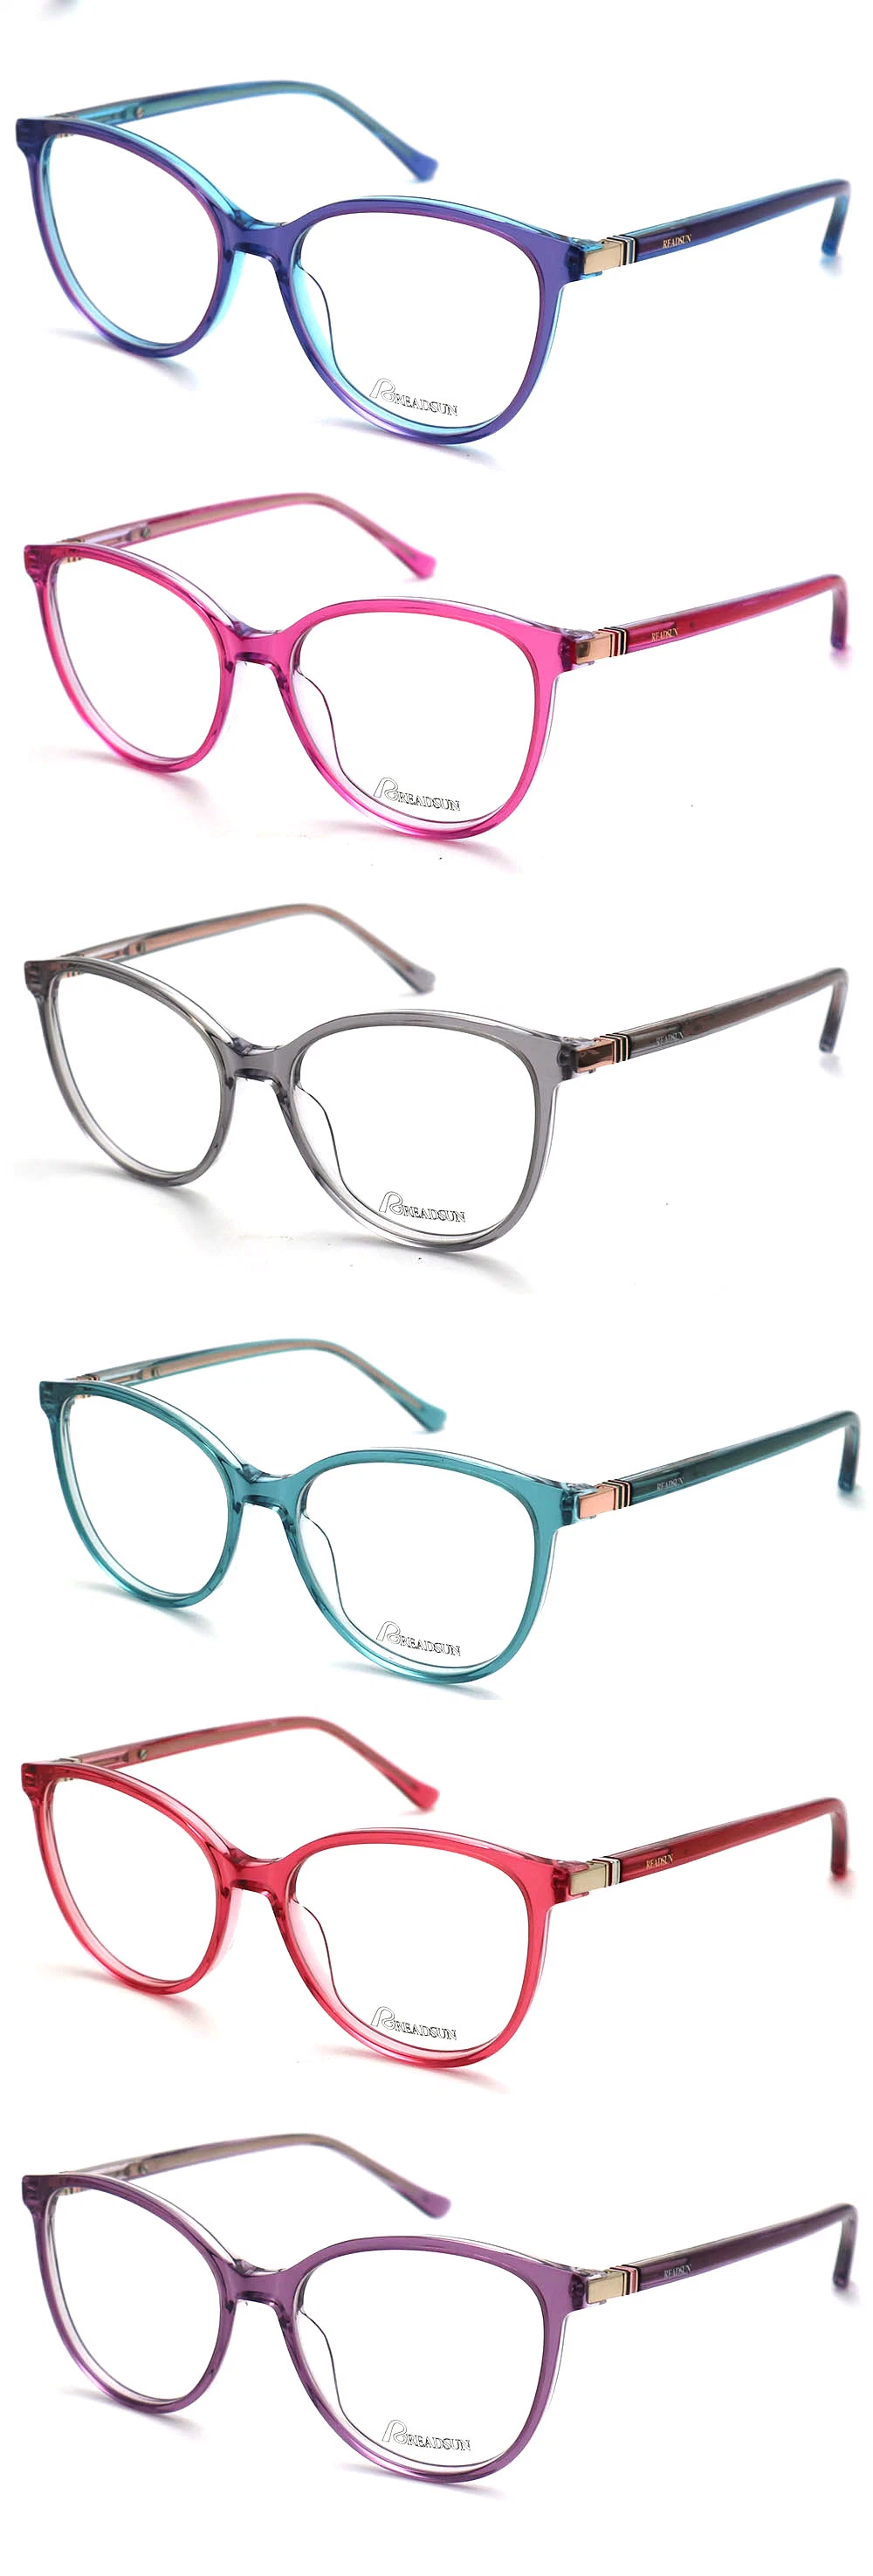 2023 New Stylish Design Unique Eyewear Fashion Acetate Optical Glasses Frame